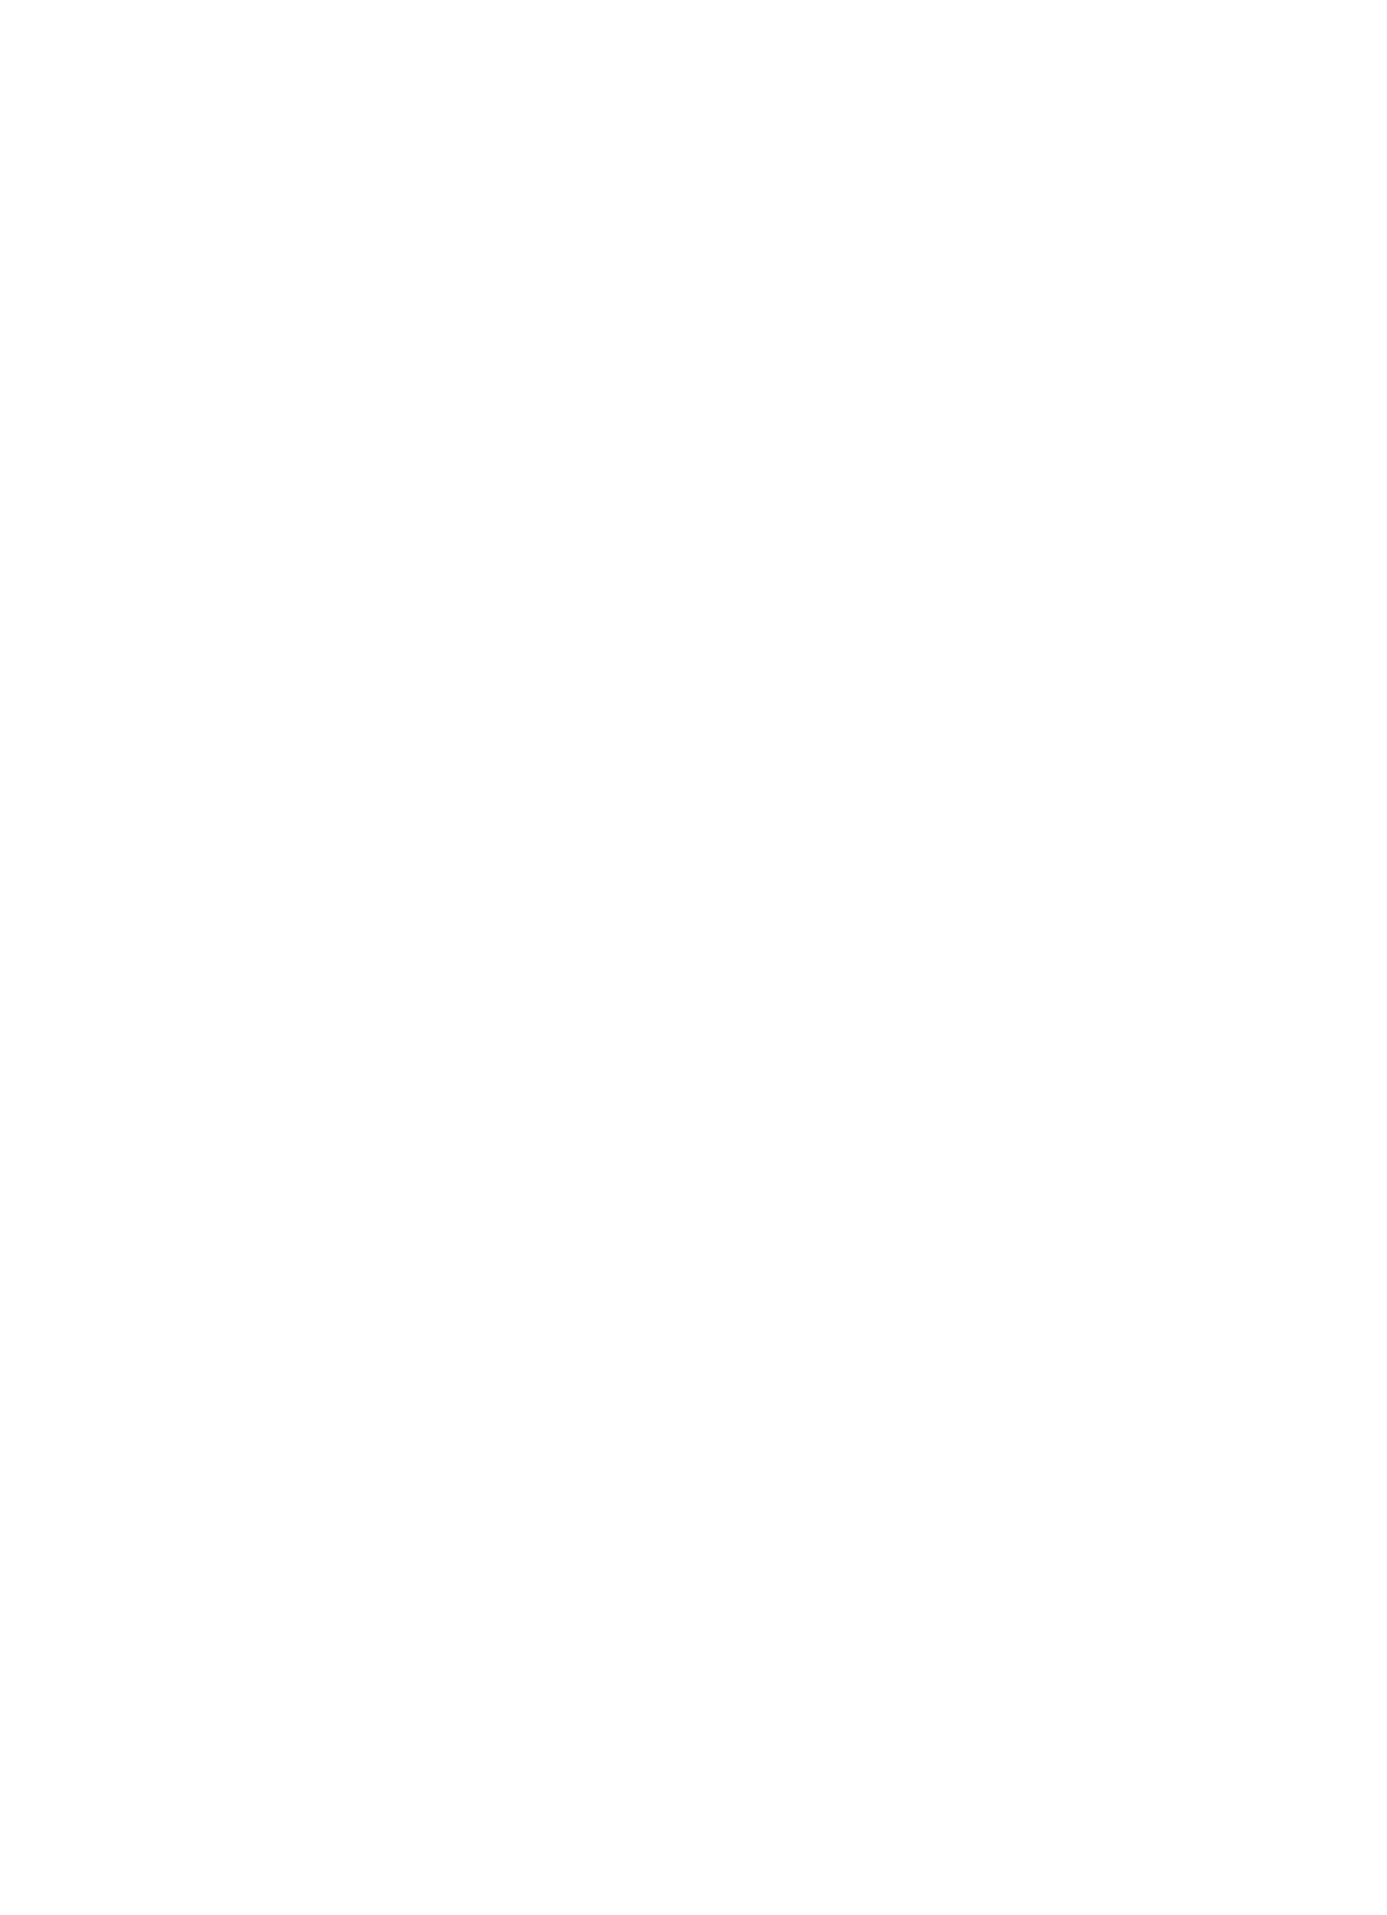 Areaa Logo - Market Data - Minneapolis Area Association of Realtors